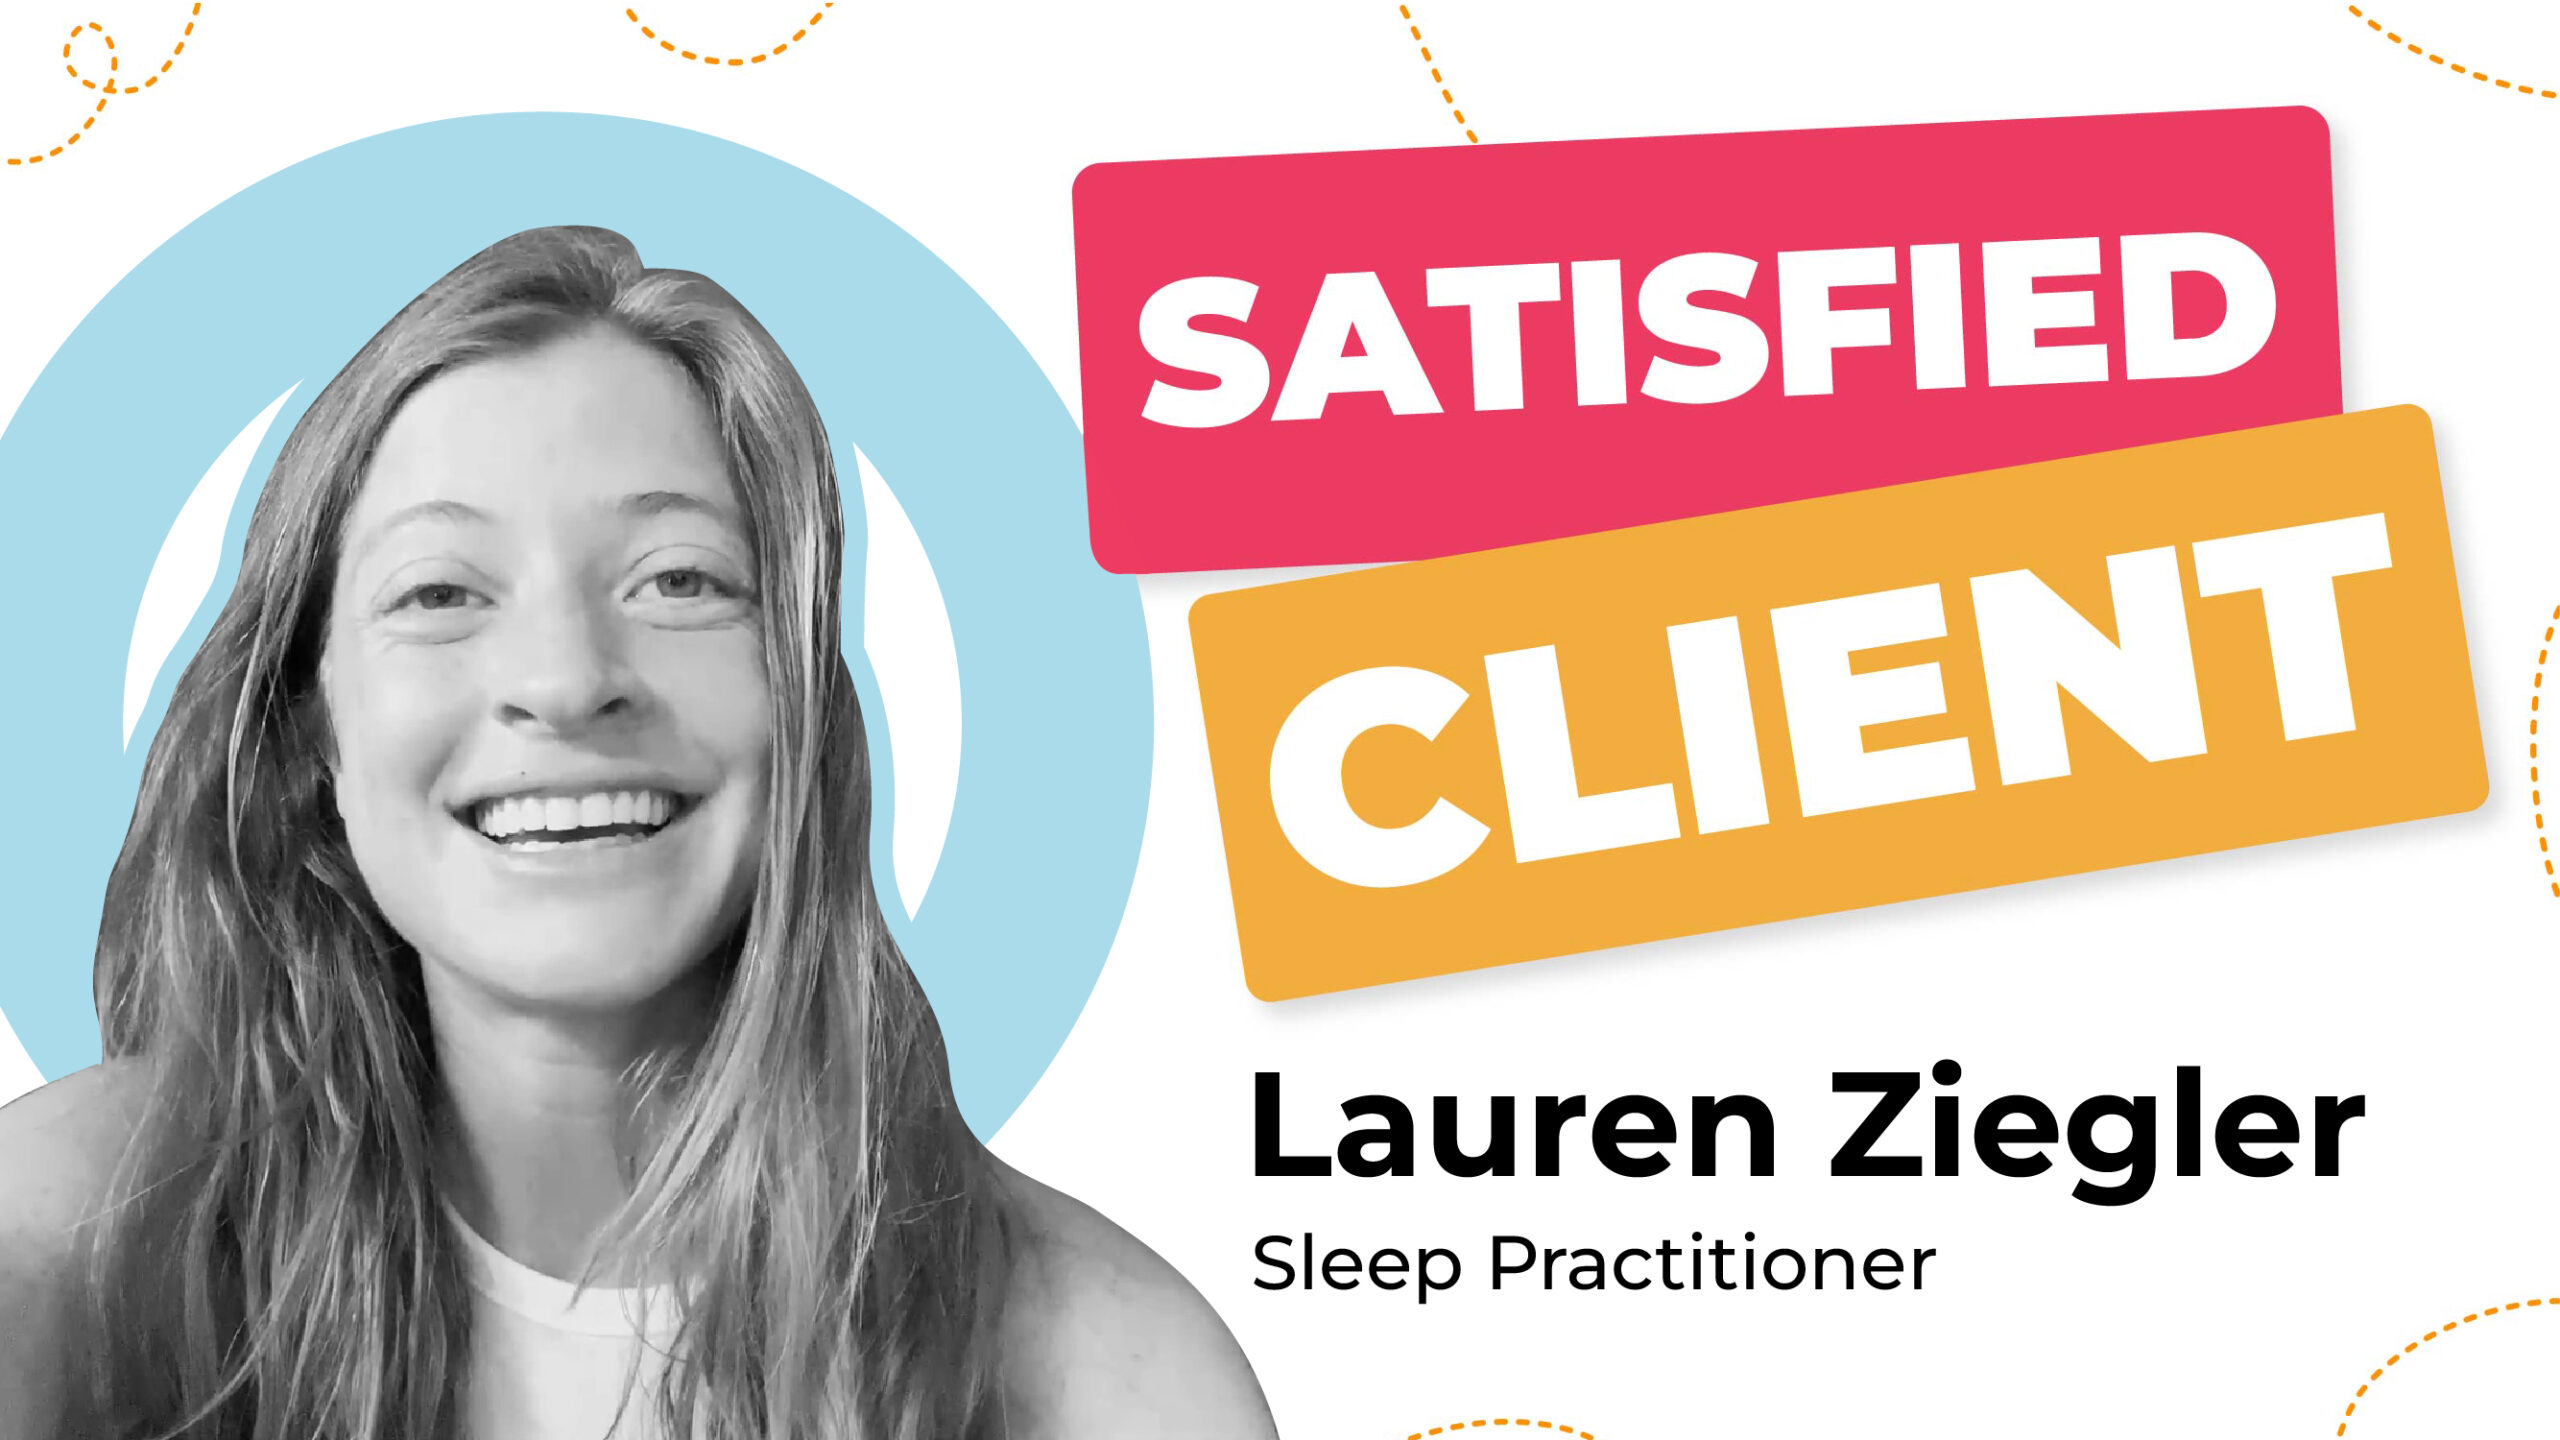 Lauren-Ziegler Client Testimonial Video